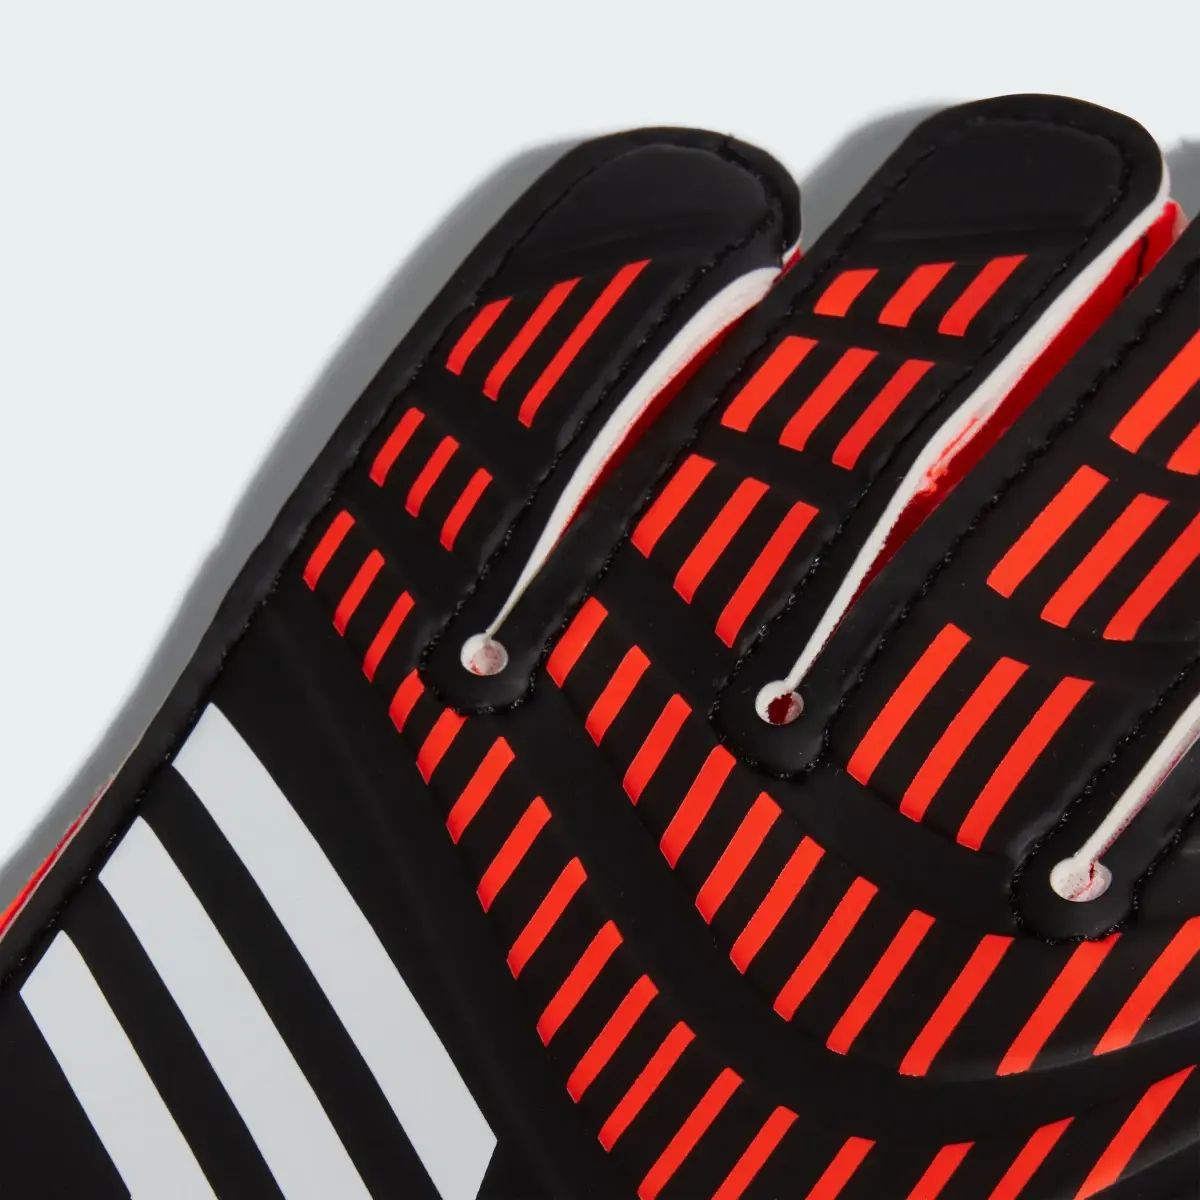 Adidas Luvas de Guarda-redes para Treino Predator – Criança. 3